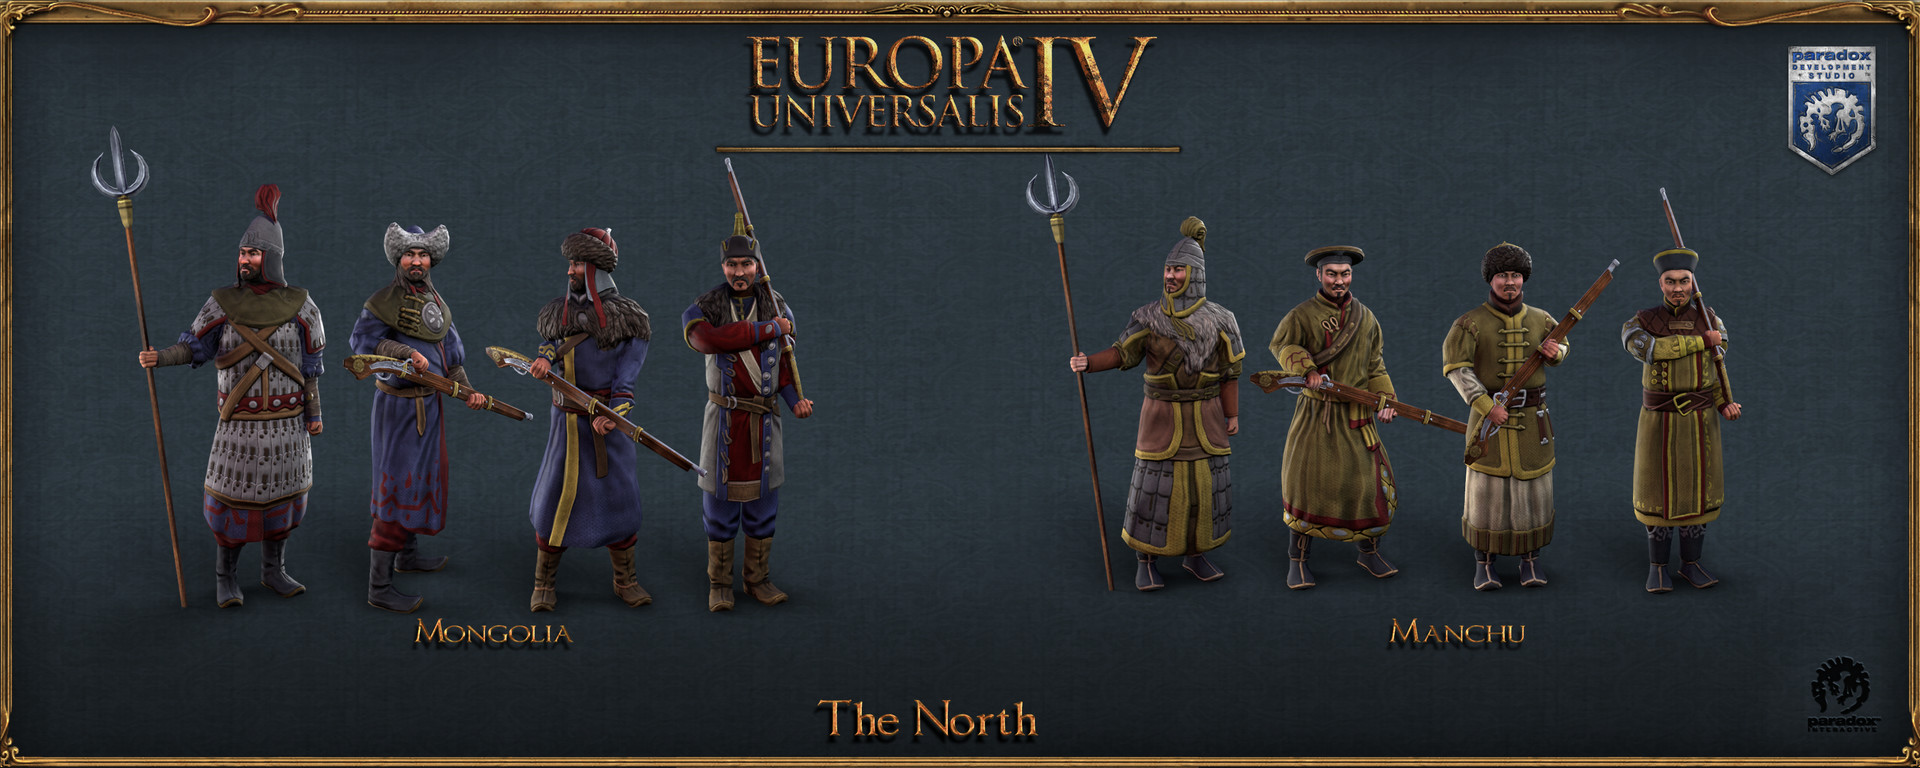 europa universalis 4 units